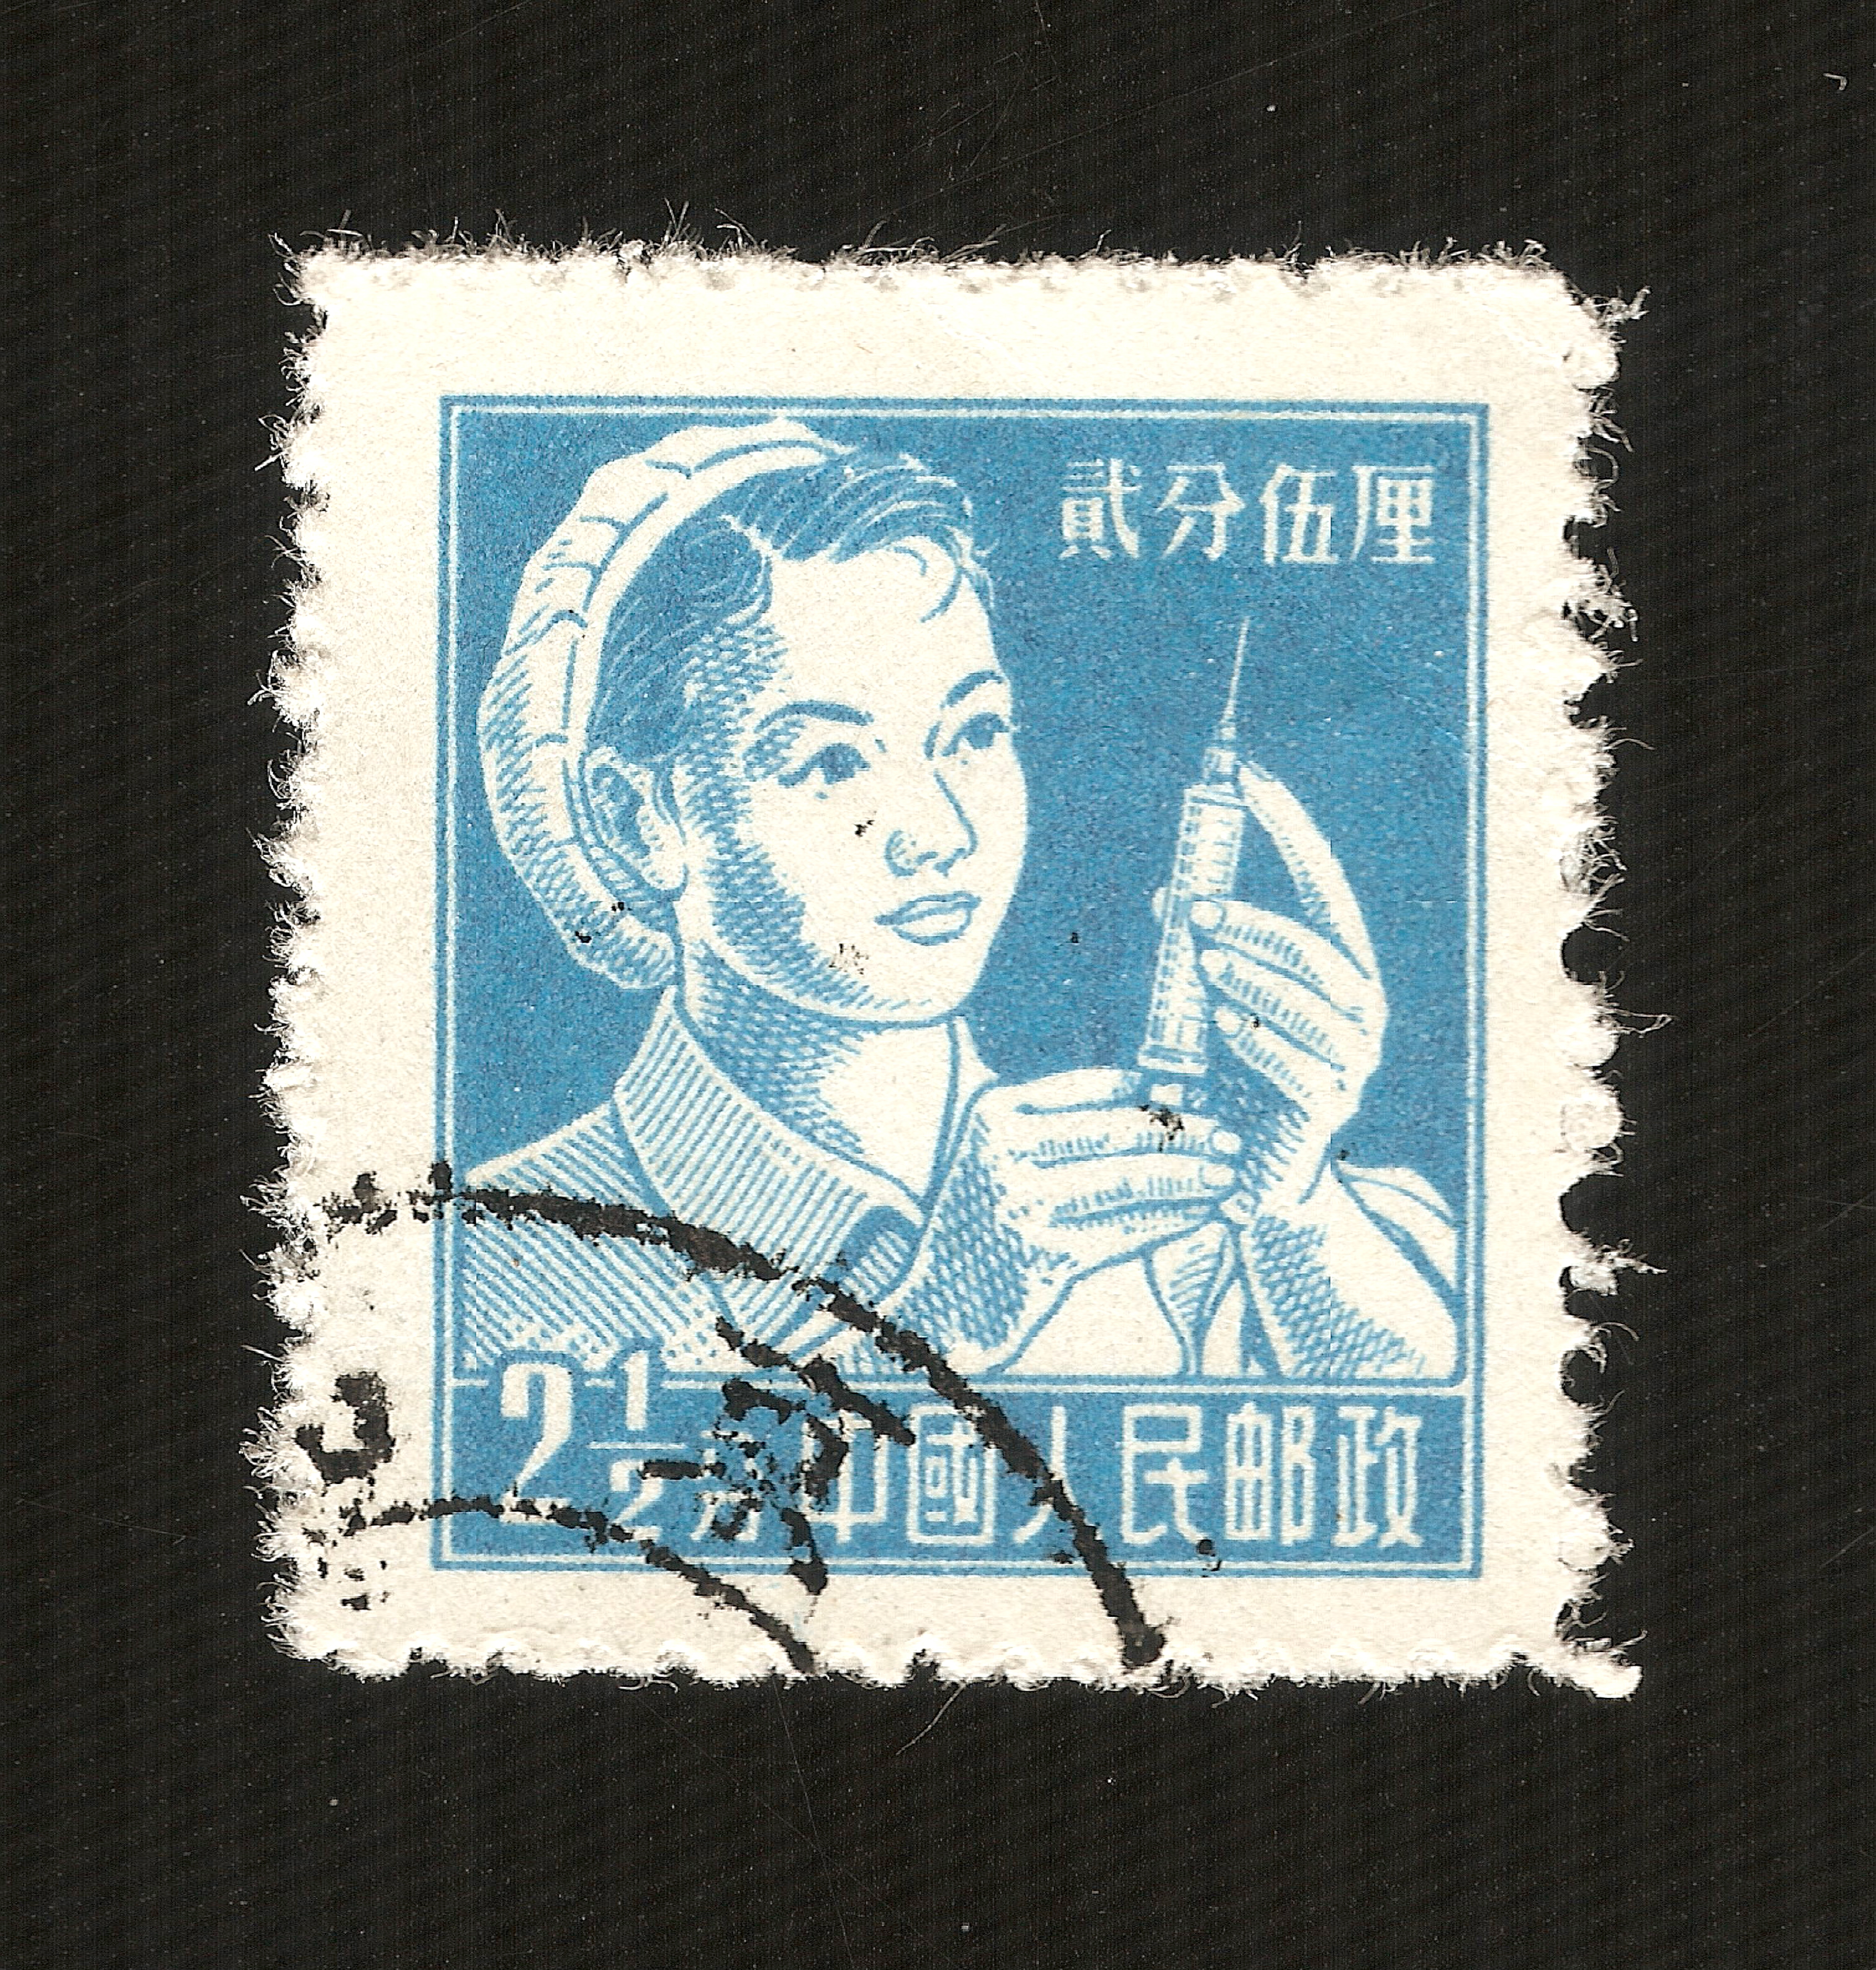 Chiny (1956) - Pielęgniarka (seria pracownicy) - 2 ½ Fen chiński (renminbi) (6048x6352)